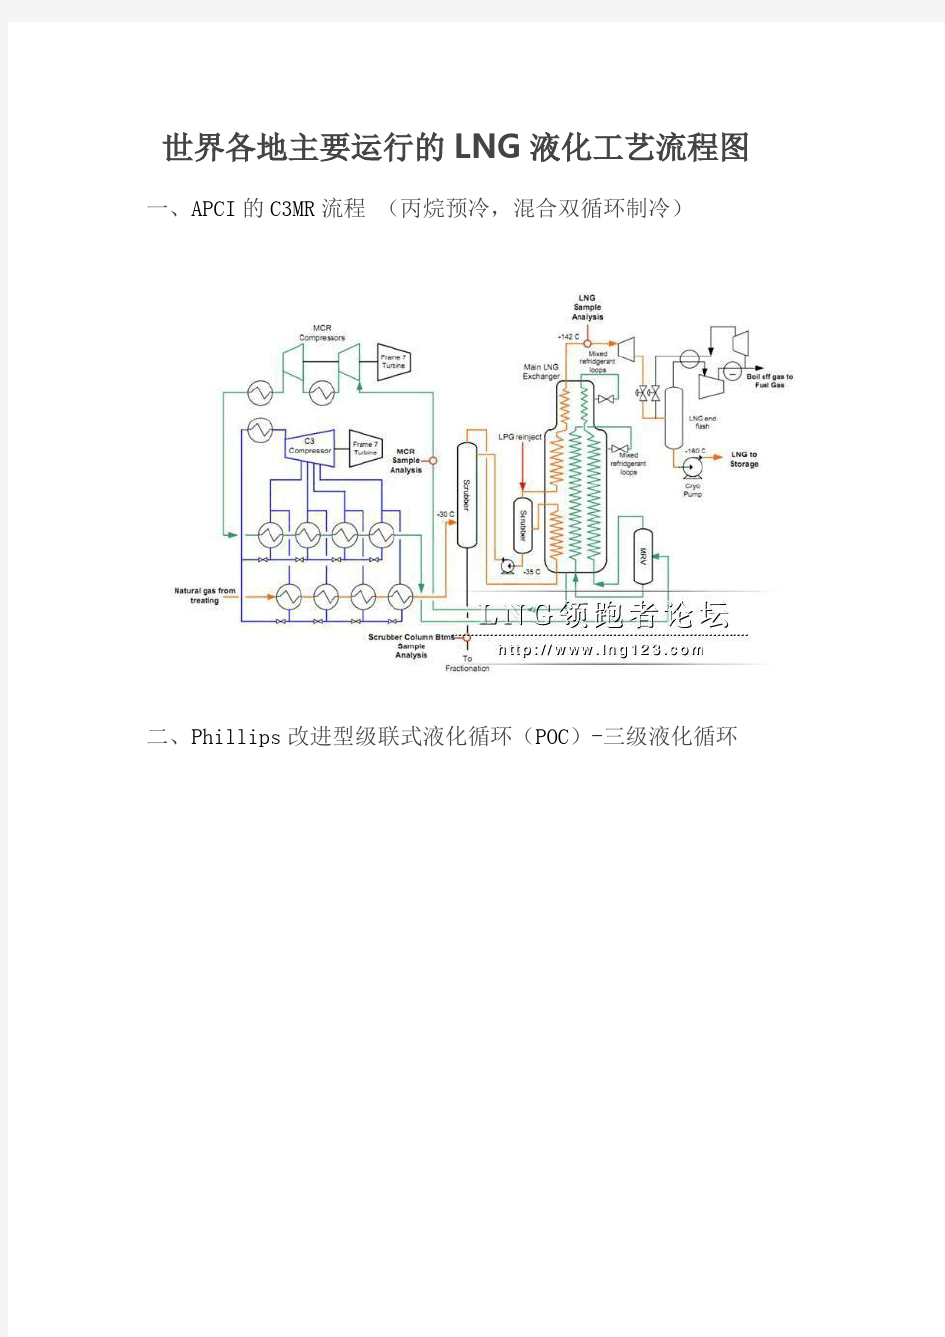 世界各地主要运行的LNG液化工艺流程图